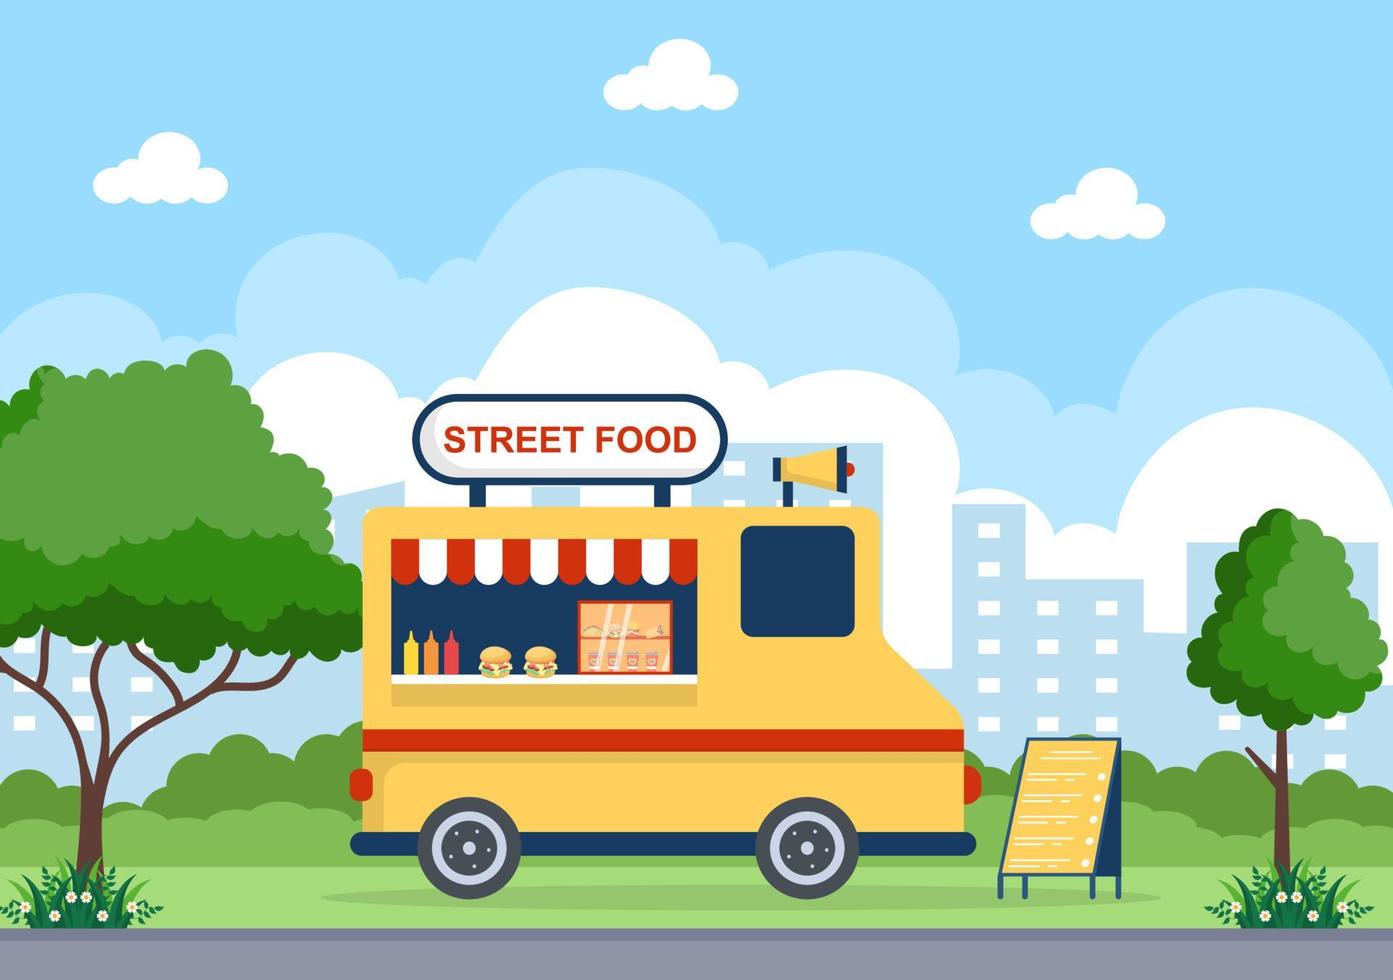 buitenstraat en foodtruck die fastfood serveert, zoals pizza, hamburger, hotdog of taco's in een platte cartoonachtergrondposterillustratie vector